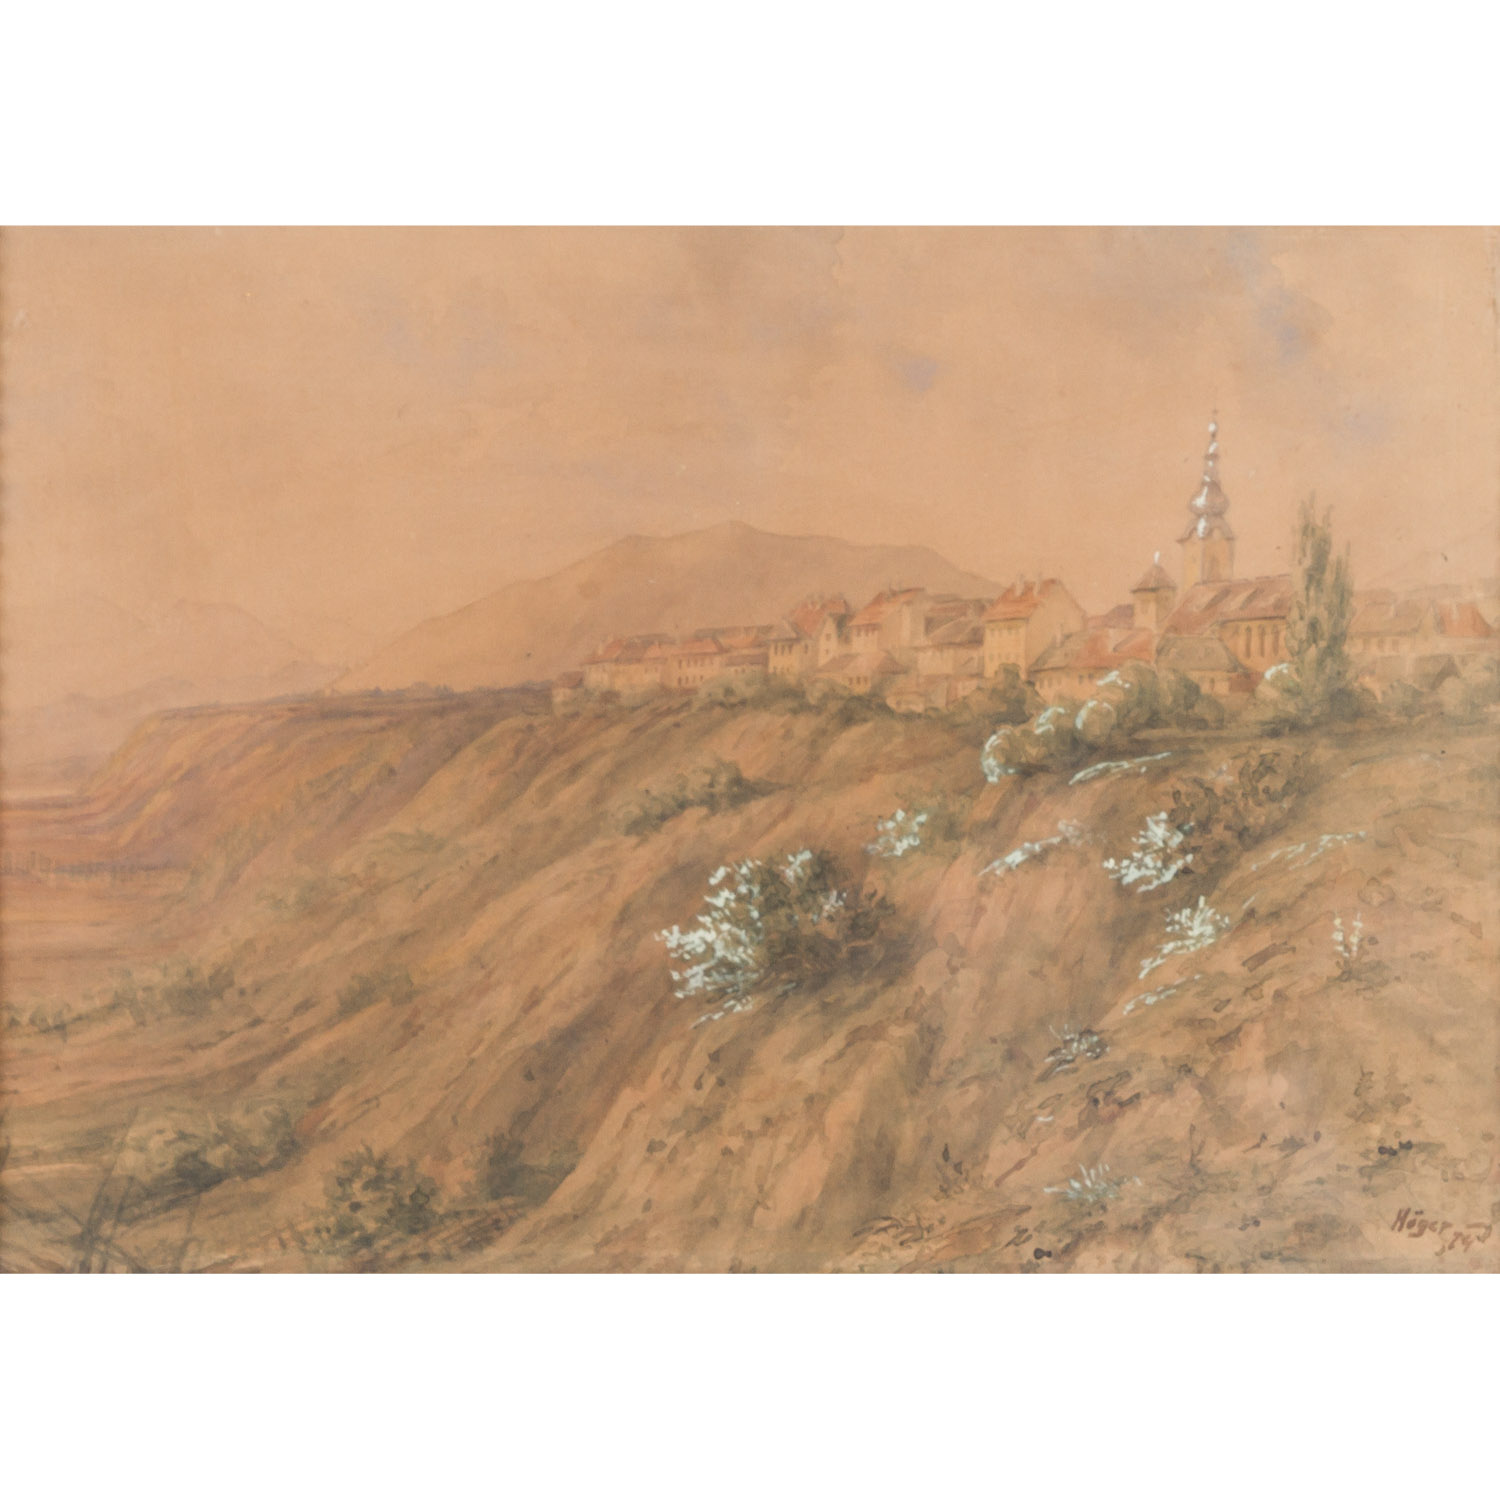 HÖGER, wohl Josef (J.H.: 1801-1877), "Stadt mit Kirche auf Bergrücken",im Vordergrund der Hang